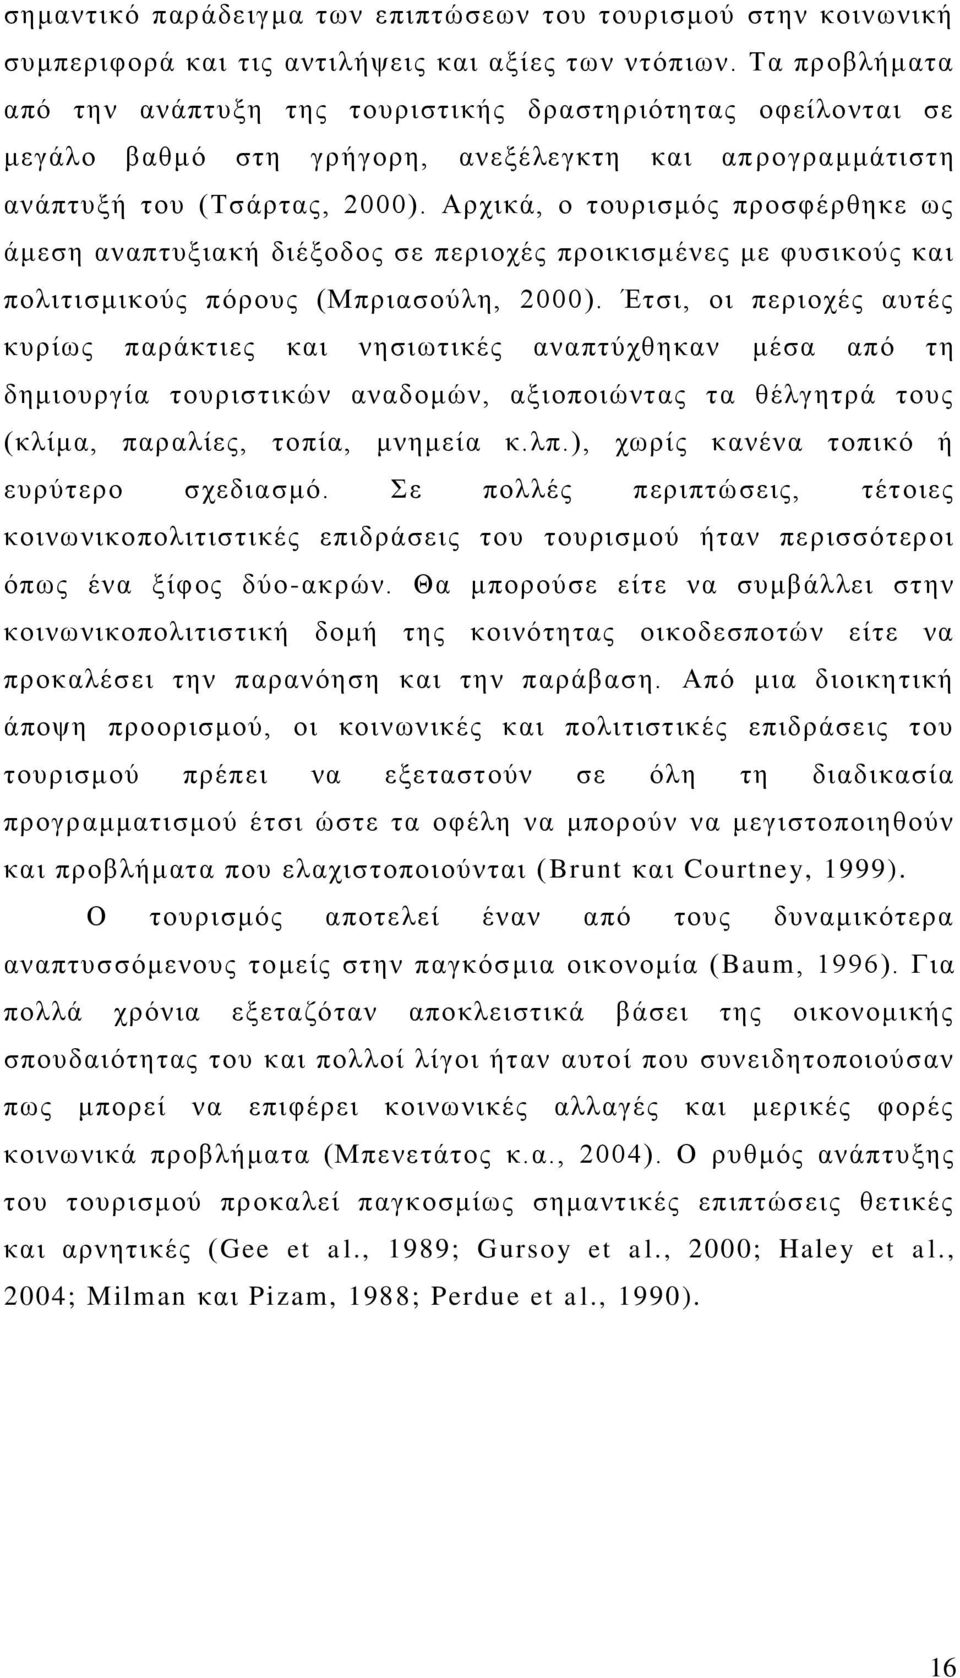 Αξρηθά, ν ηνπξηζκφο πξνζθέξζεθε σο άκεζε αλαπηπμηαθή δηέμνδνο ζε πεξηνρέο πξνηθηζκέλεο κε θπζηθνχο θαη πνιηηηζκηθνχο πφξνπο (Μπξηαζνχιε, 2000).